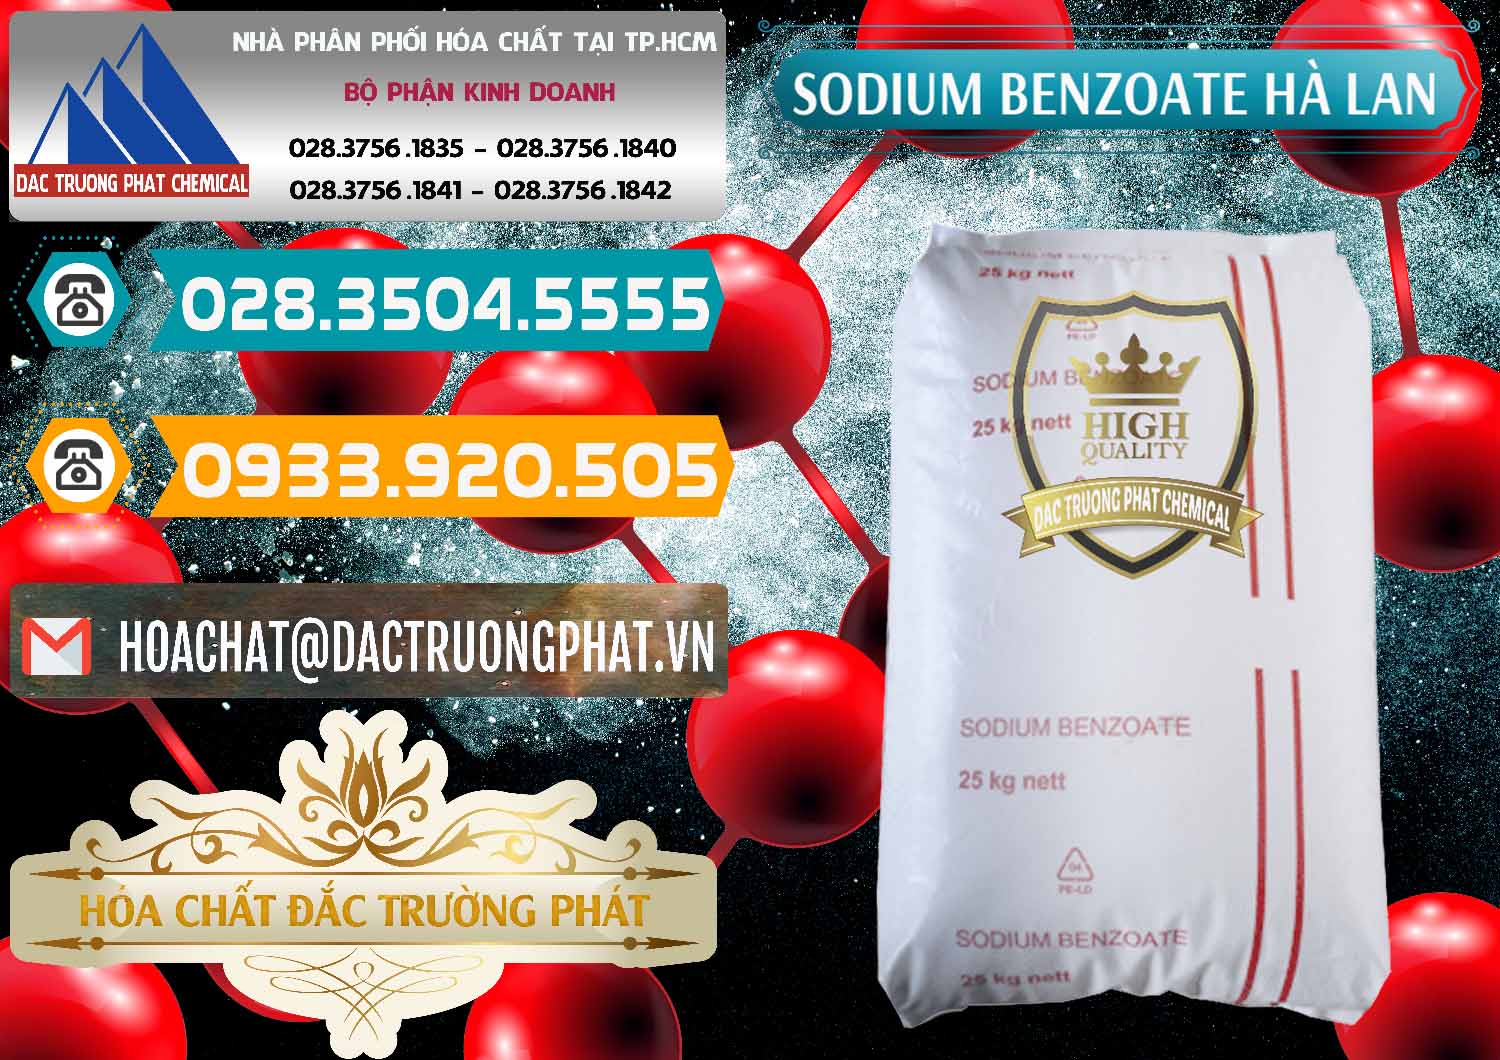 Công ty bán & cung cấp Sodium Benzoate - Mốc Bột Chữ Cam Hà Lan Netherlands - 0360 - Công ty nhập khẩu _ phân phối hóa chất tại TP.HCM - congtyhoachat.vn